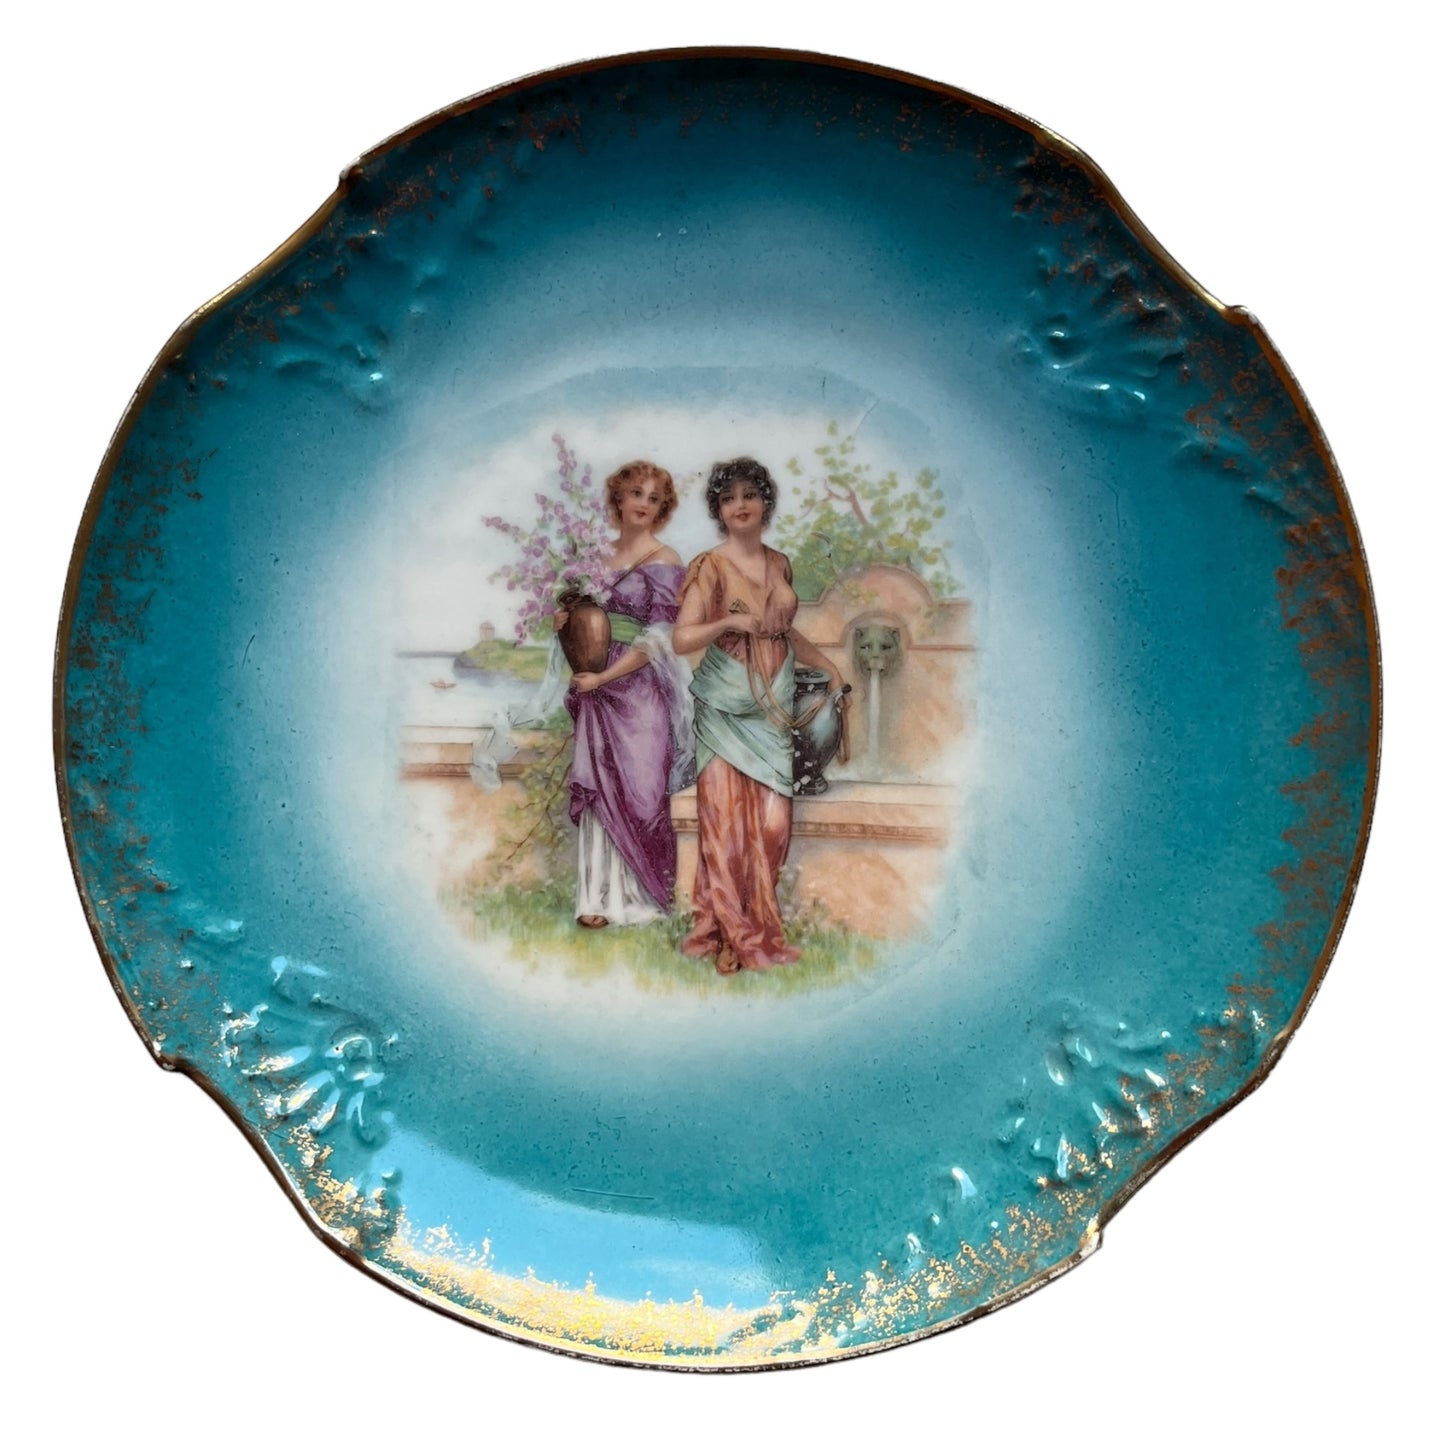 2 тарелки Виктории со старинной женской сценой.